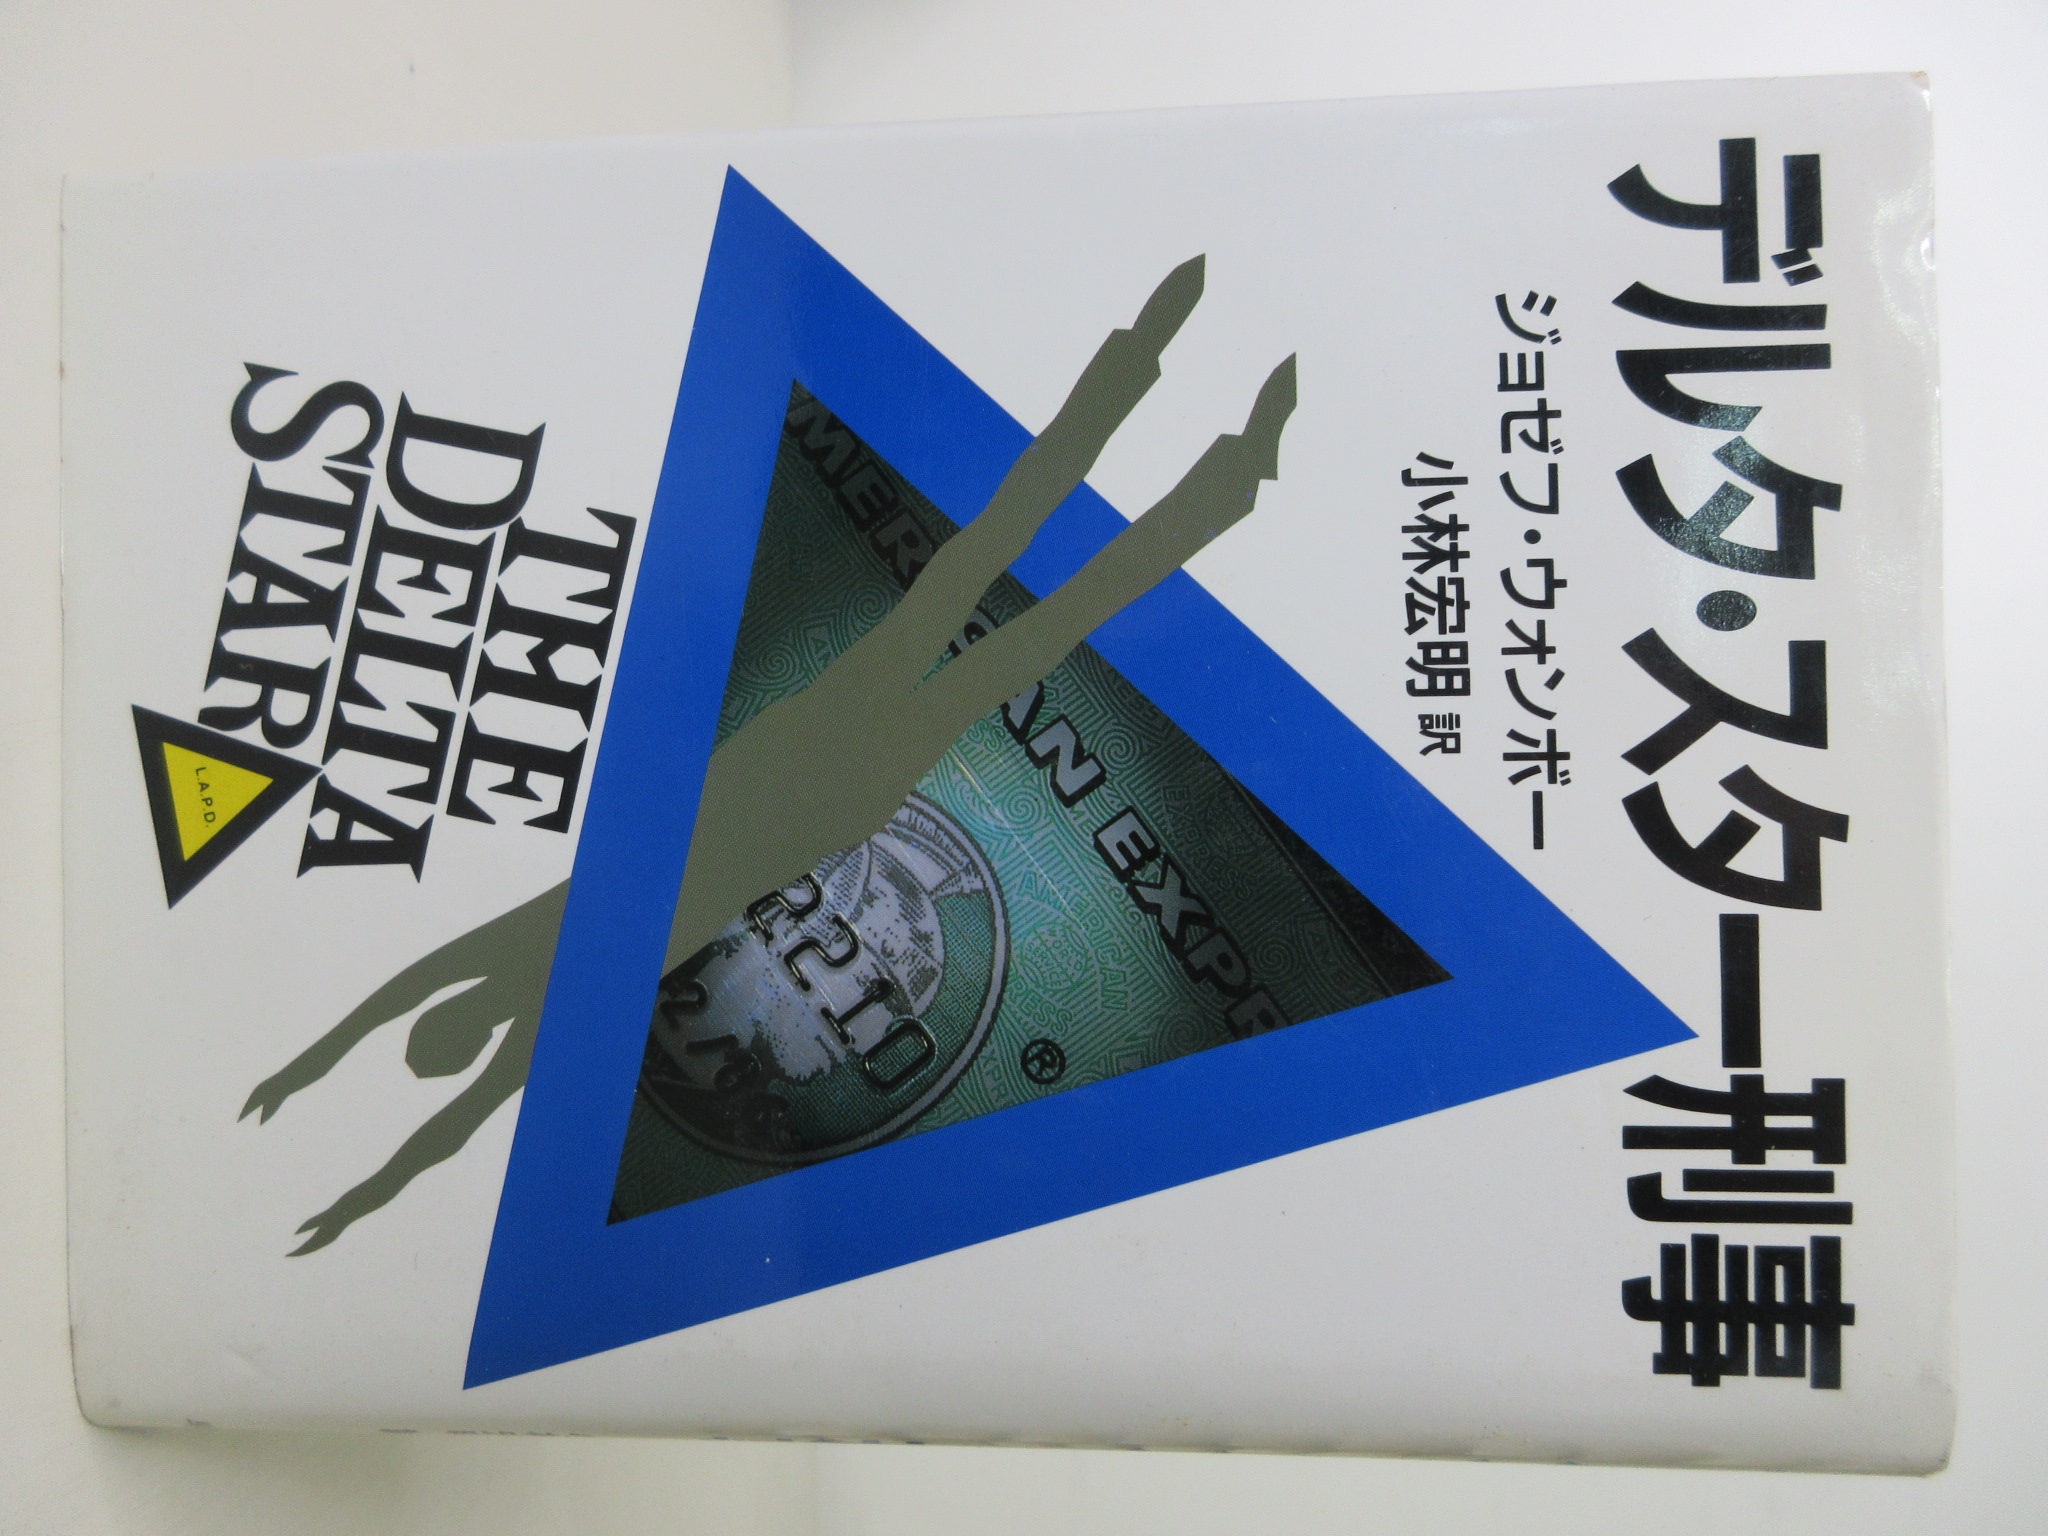 デルタ・スター刑事 (ハヤカワ・ノヴェルズ)[ジョゼフ・ウォンボー](早川書房)(ISBN:4152075929)